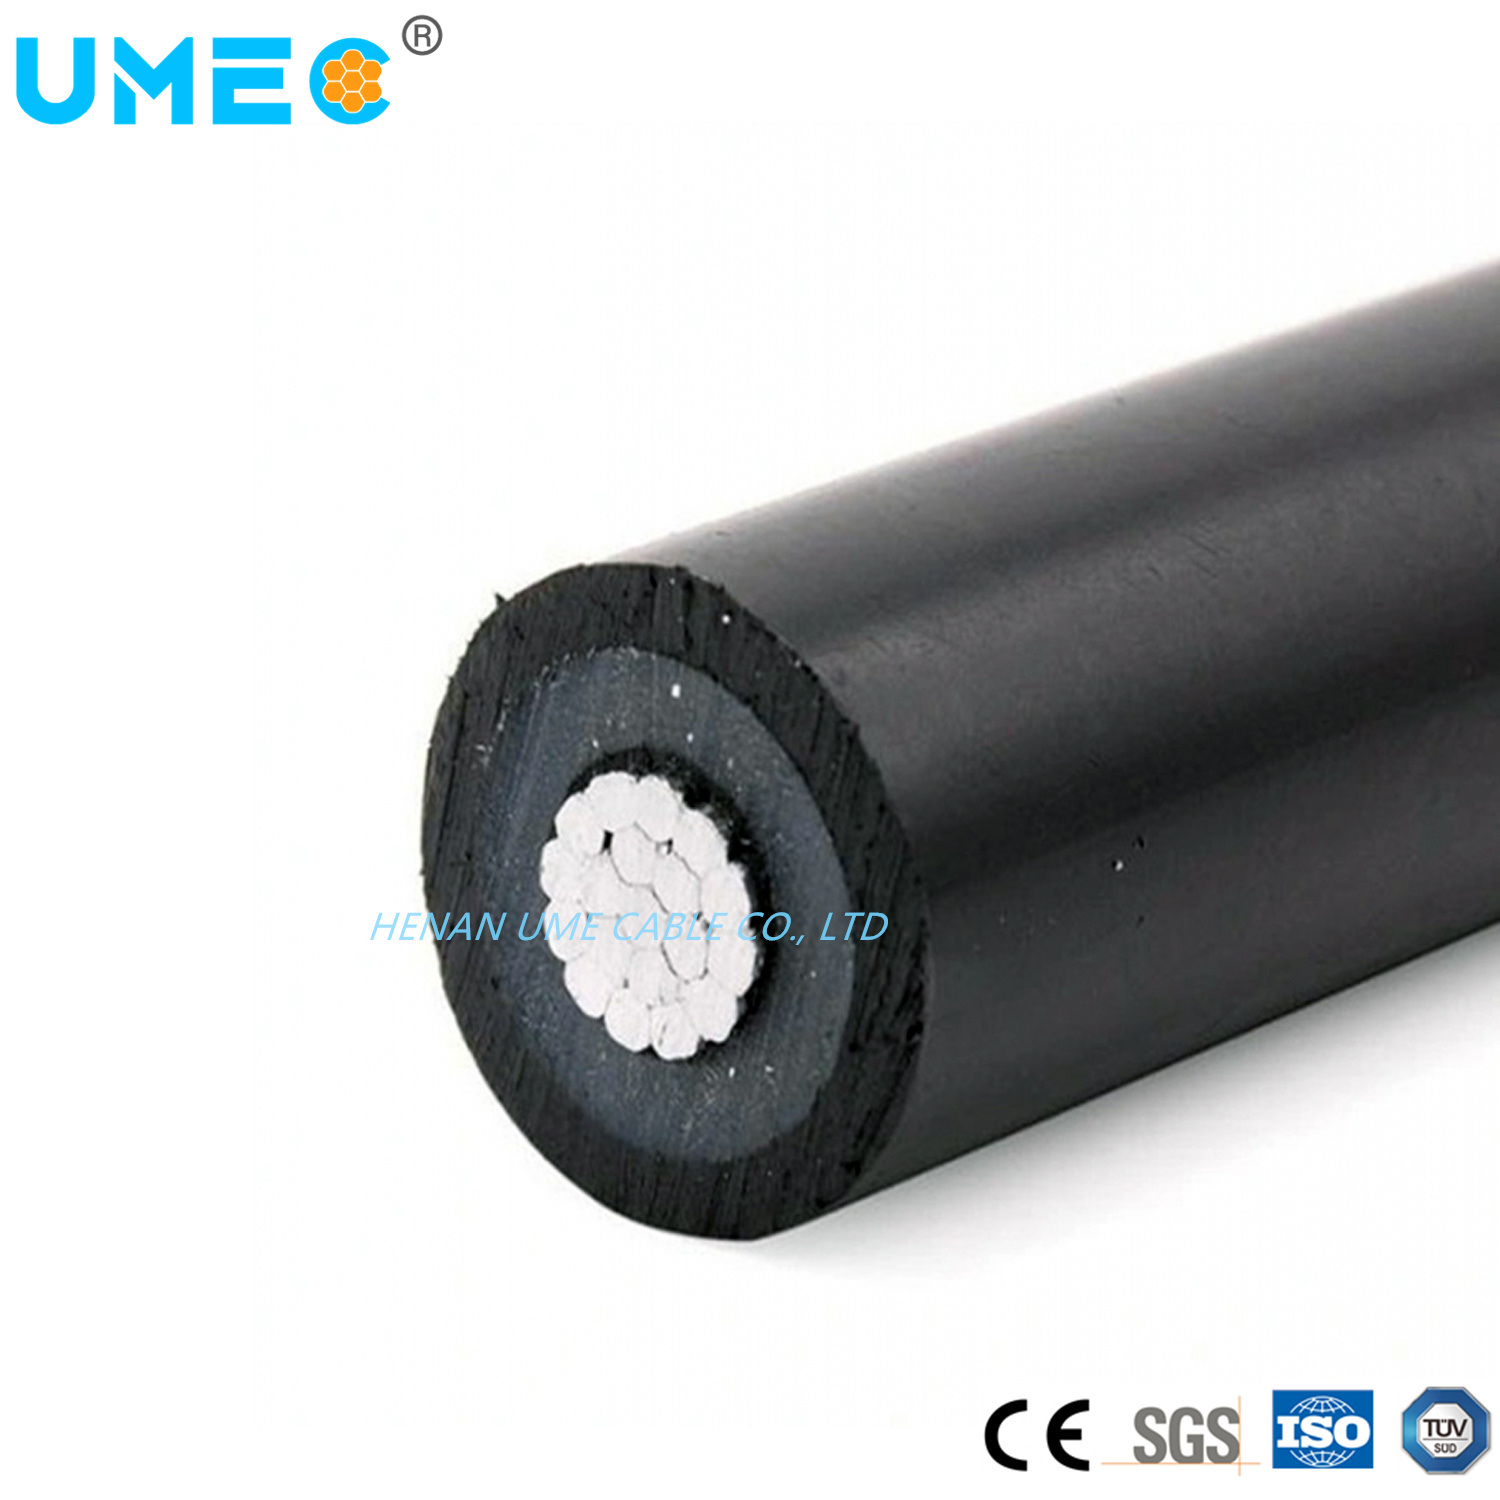 
                На заводе производителя прямой Ume торговой марки кабеля ABC среднего напряжения
            